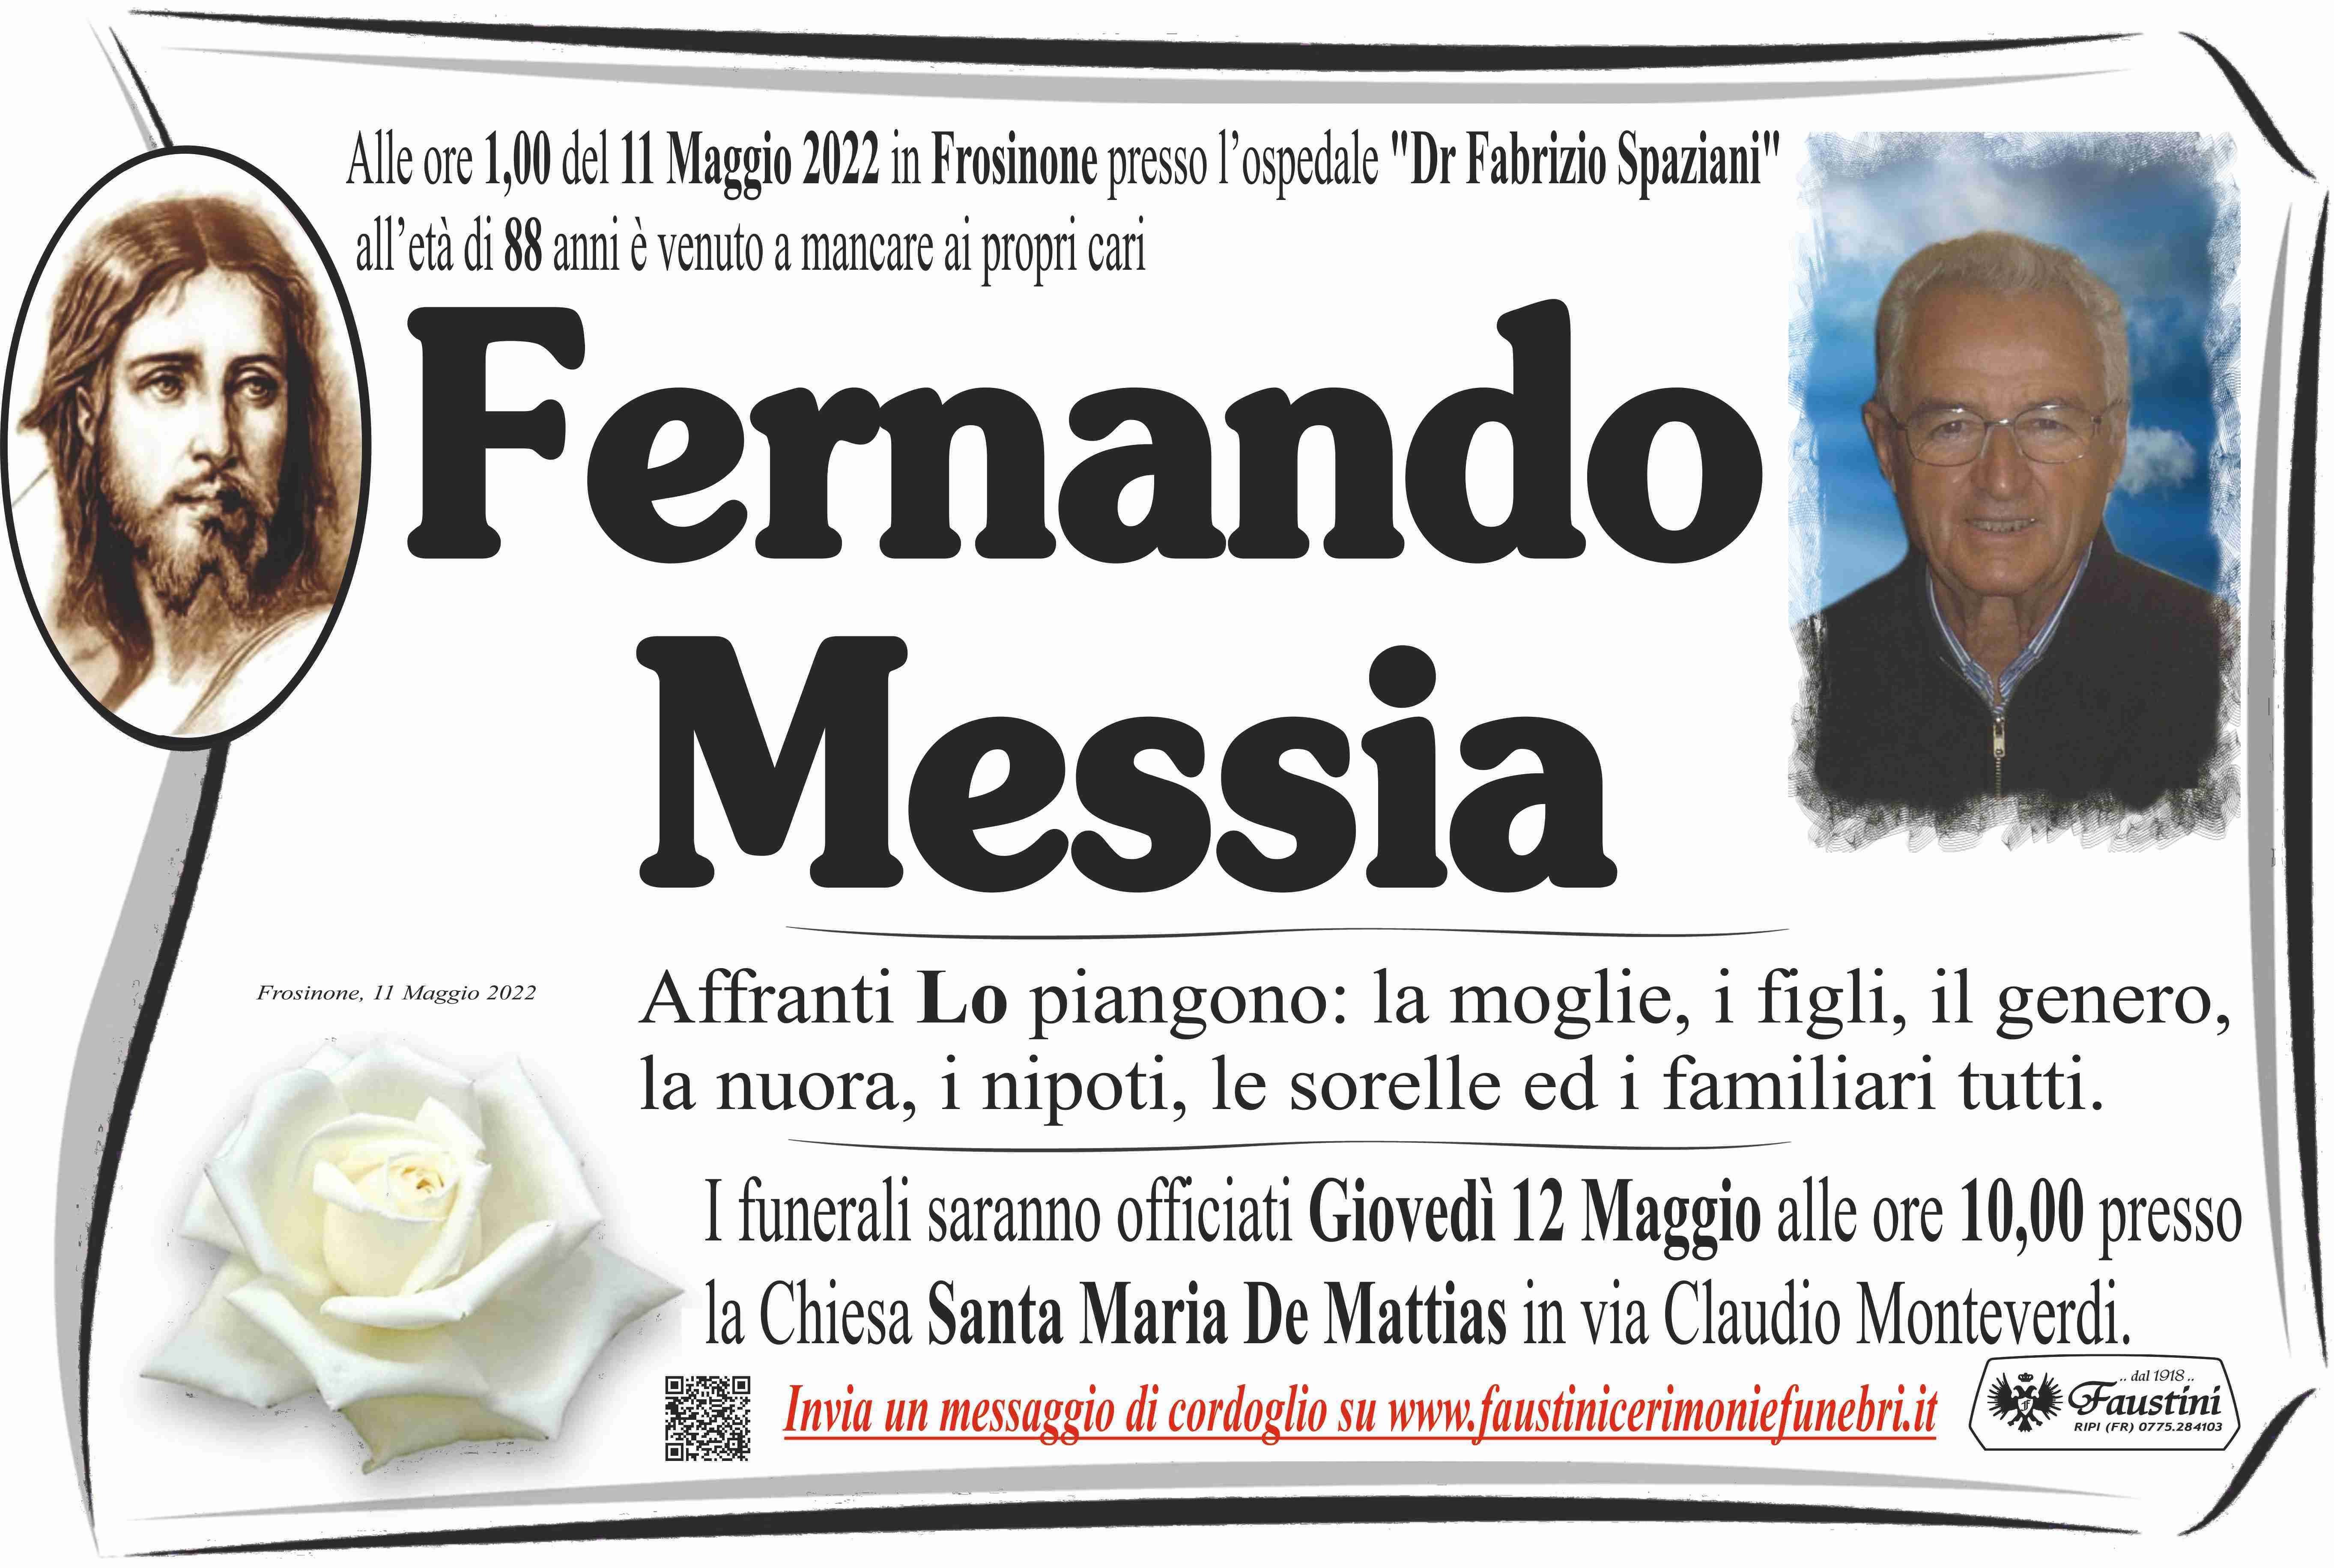 Fernando Messia